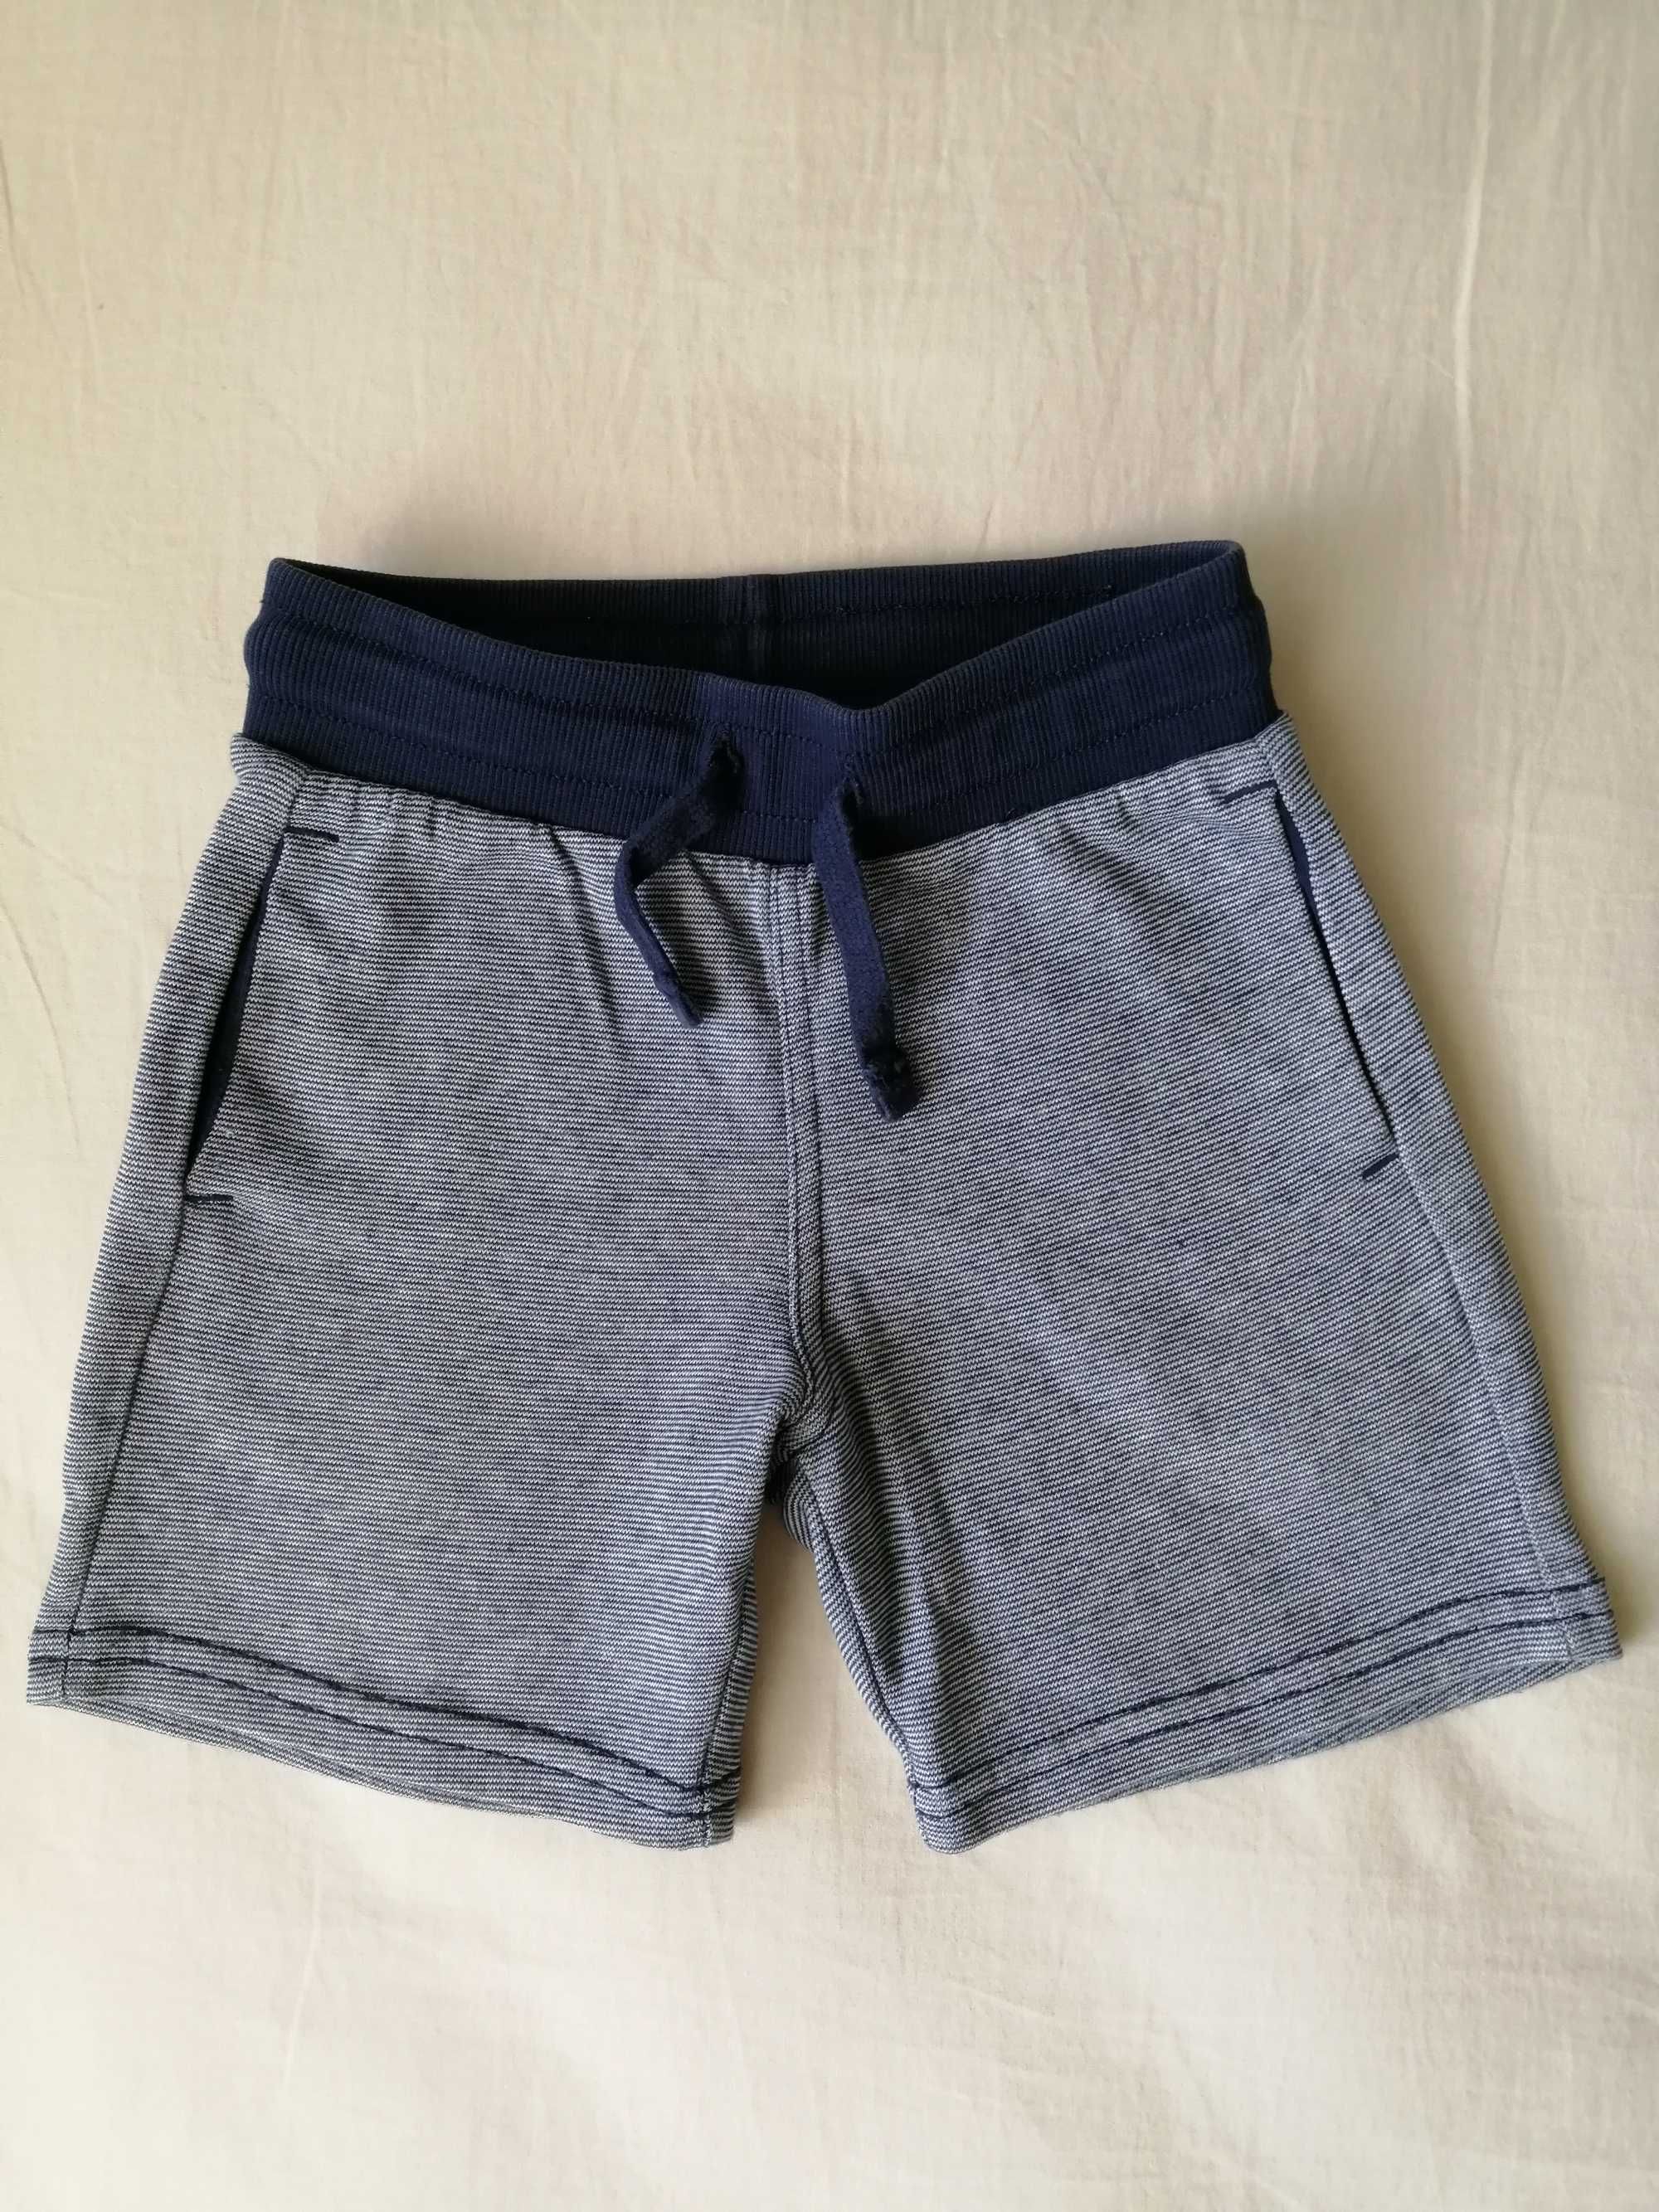 Къси панталонки и бански за момче, H&M, George, 92-104 см., 1 1/2-4 г.